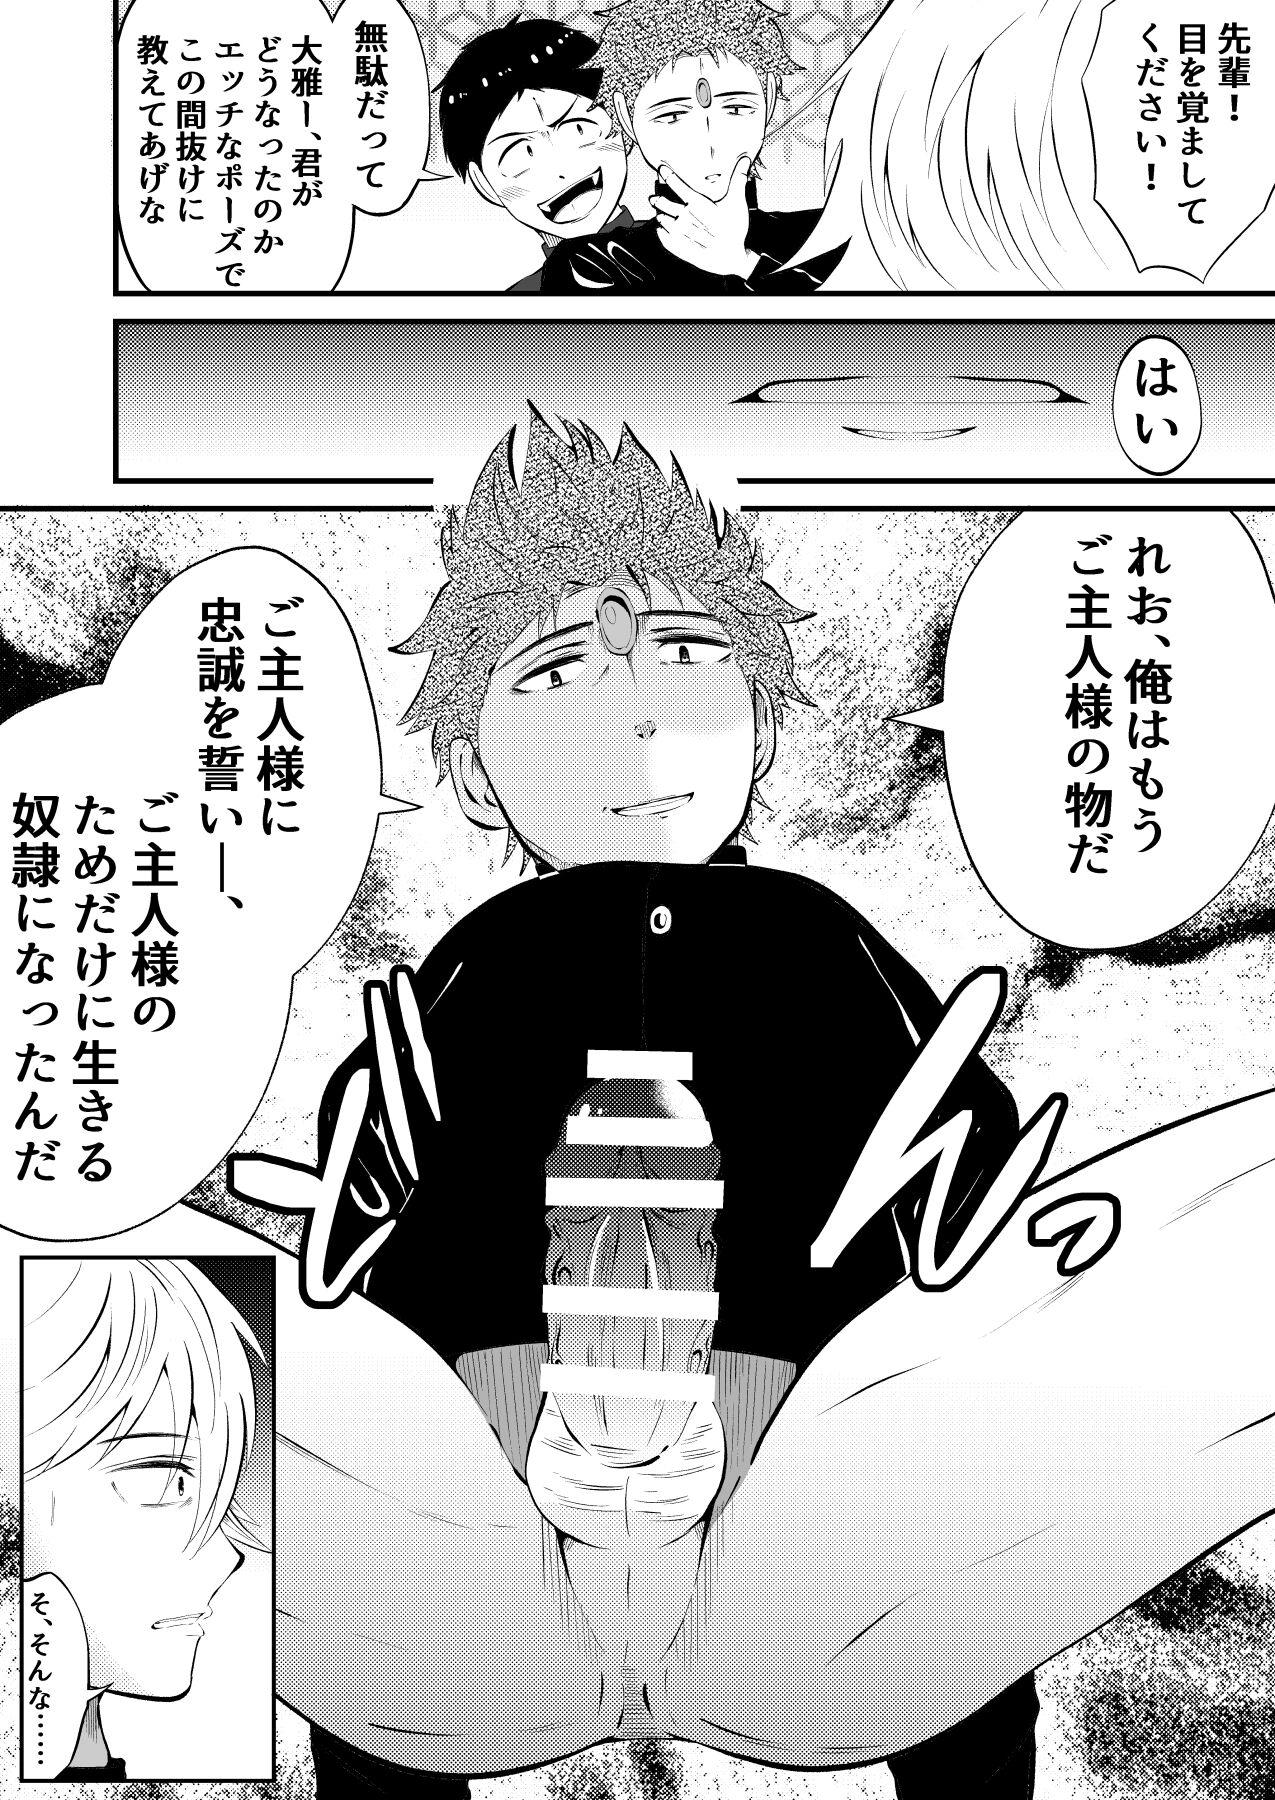 Emo Seito kaichou sama o maryoku de sennou, ayatsuri ningyou doreika Cheerleader - Page 4